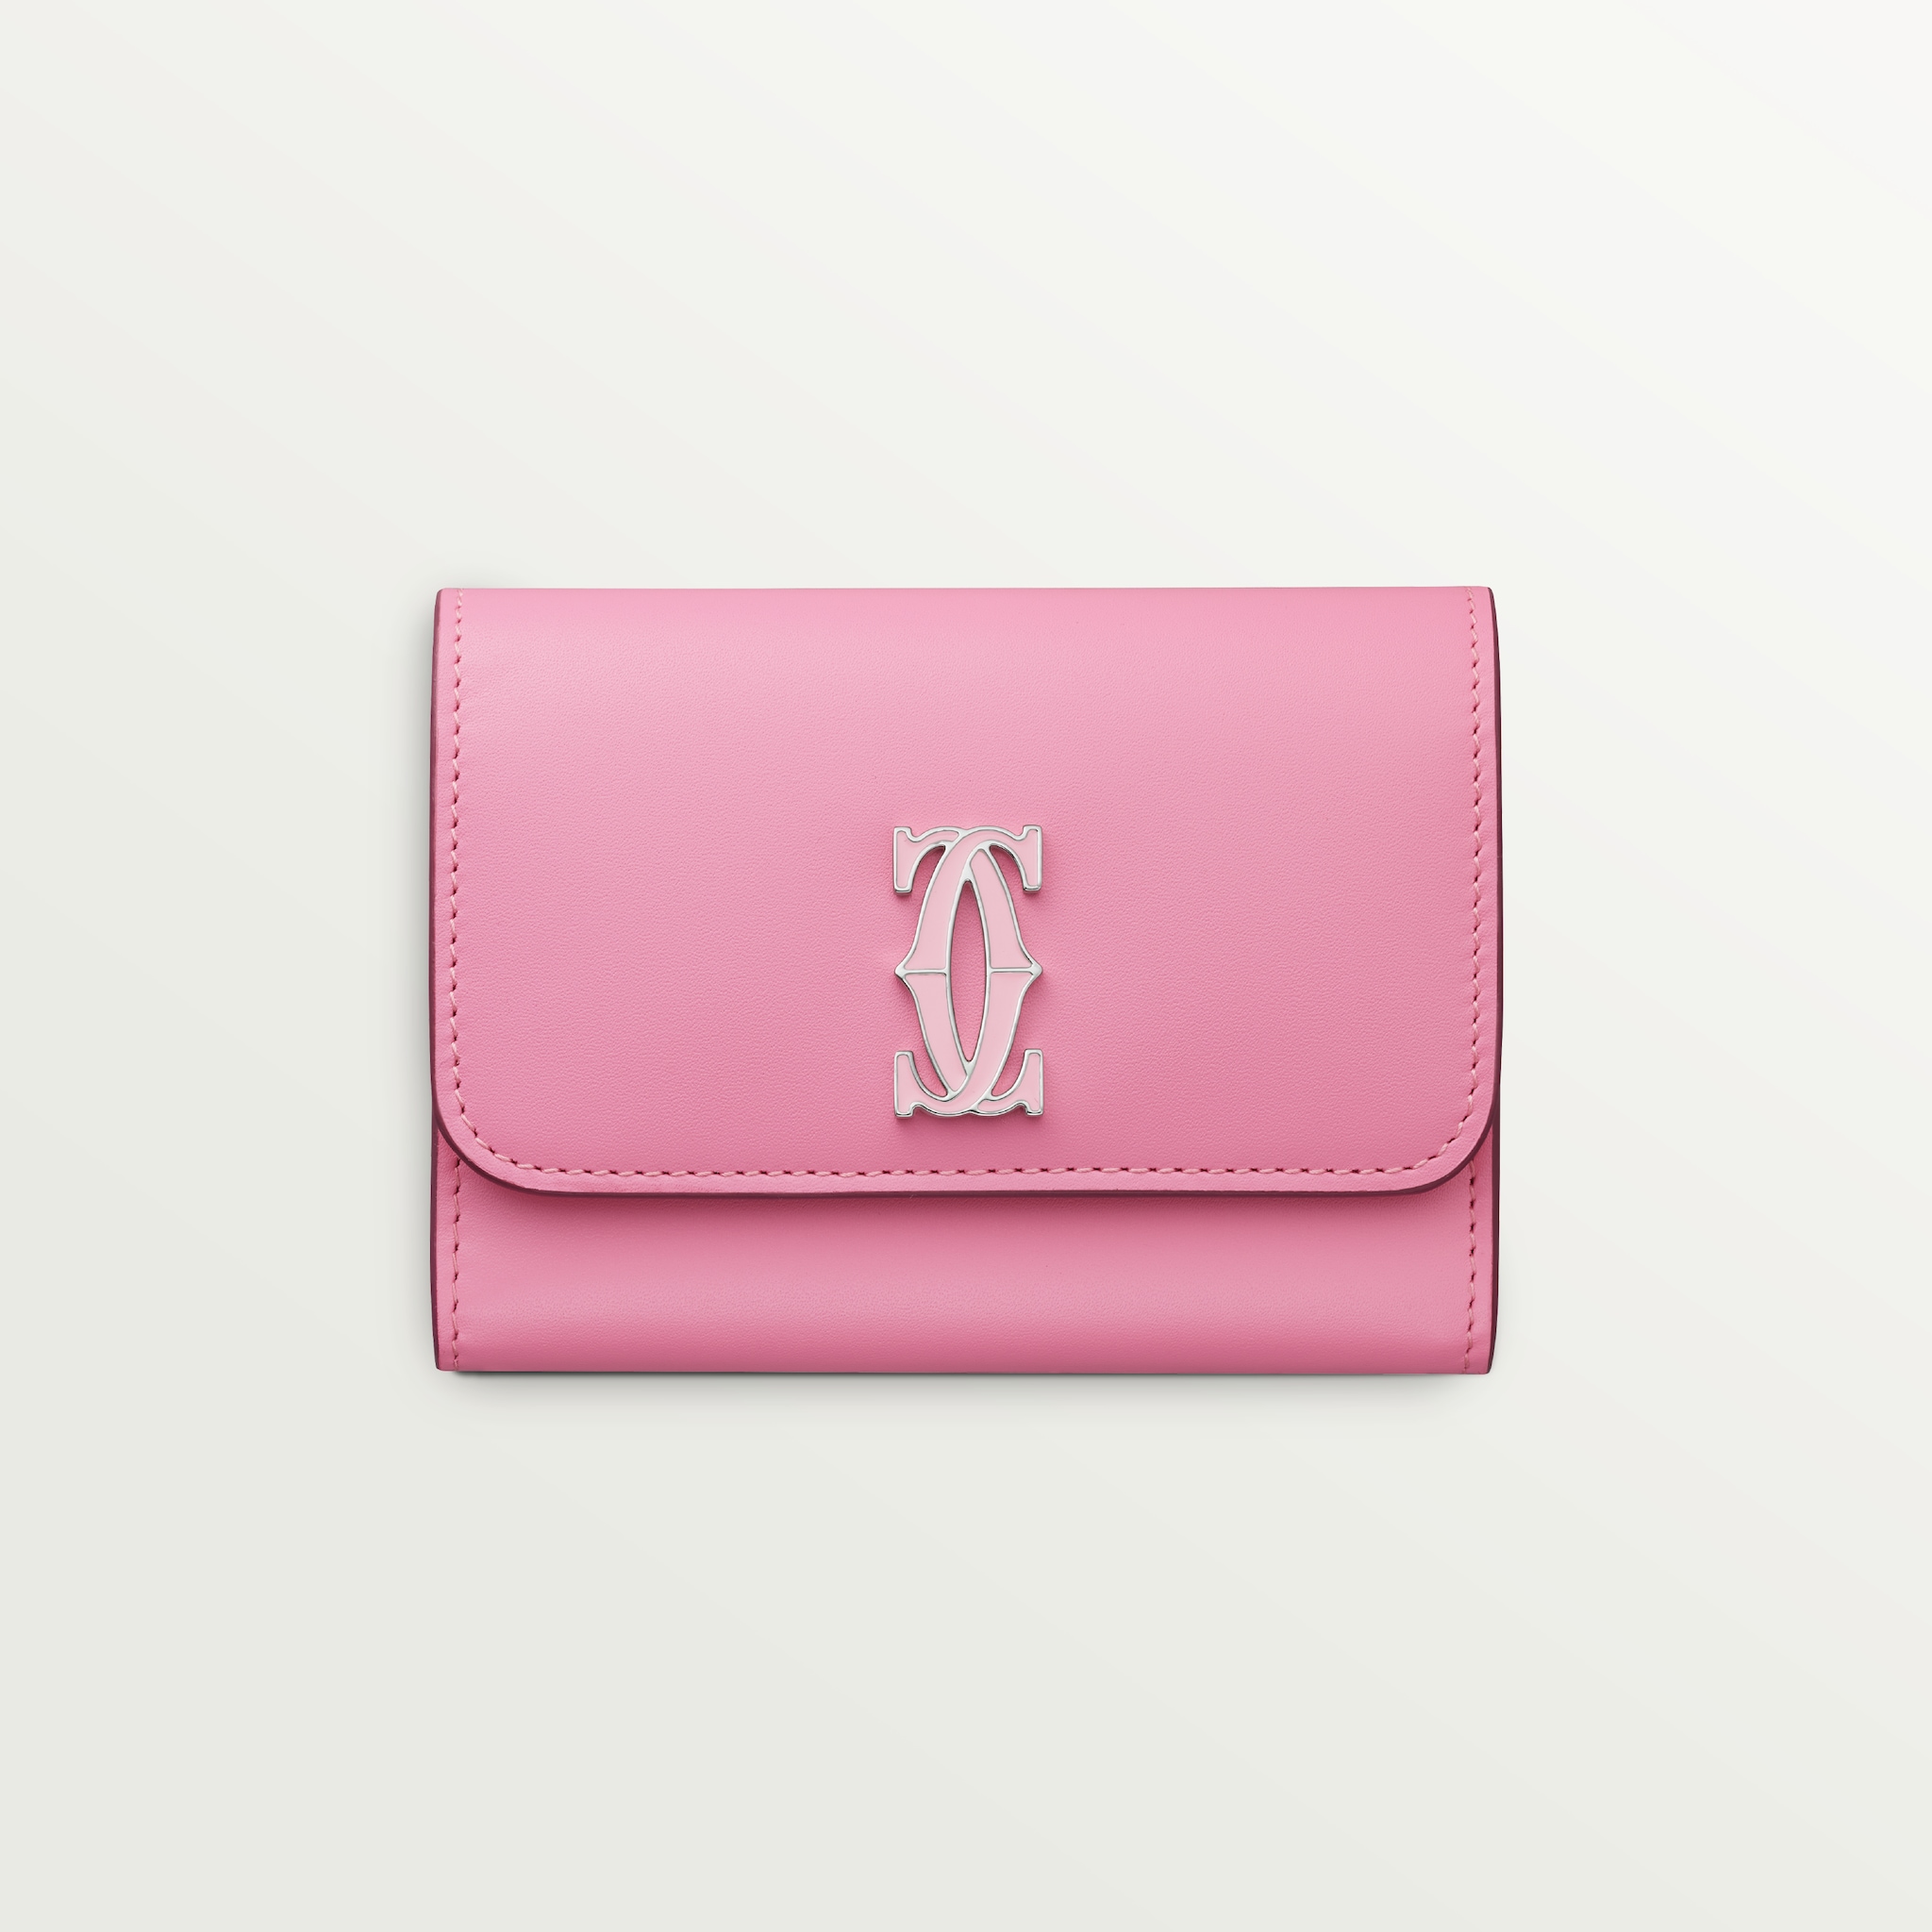 銀包，迷你款，C de Cartier雙色粉紅色/淺粉紅色小牛皮，鍍鈀及淺粉紅色琺瑯飾面